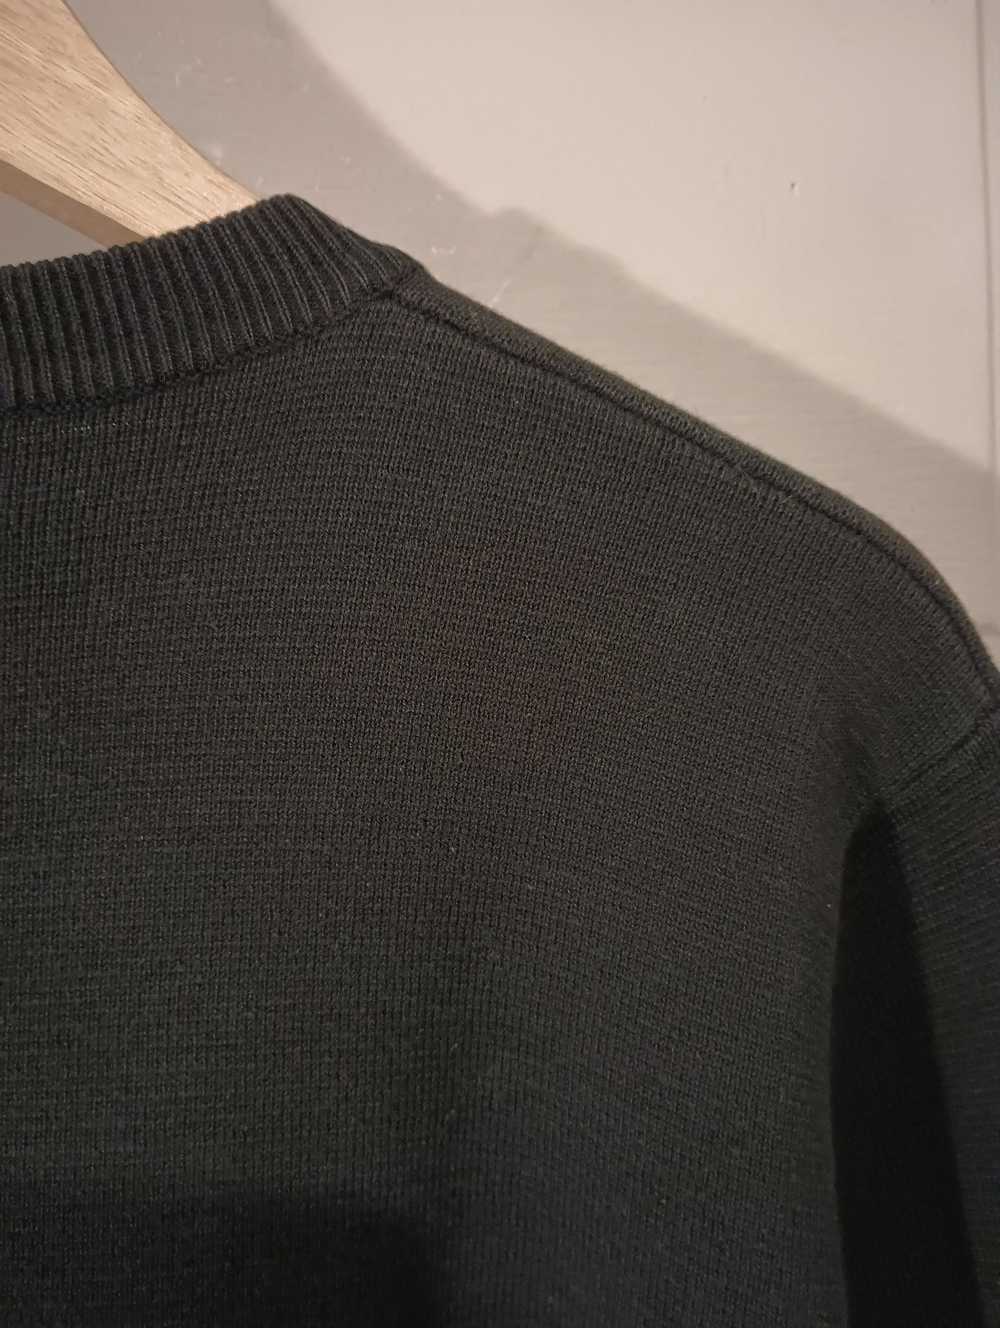 Supreme Supreme thick sweater - image 10